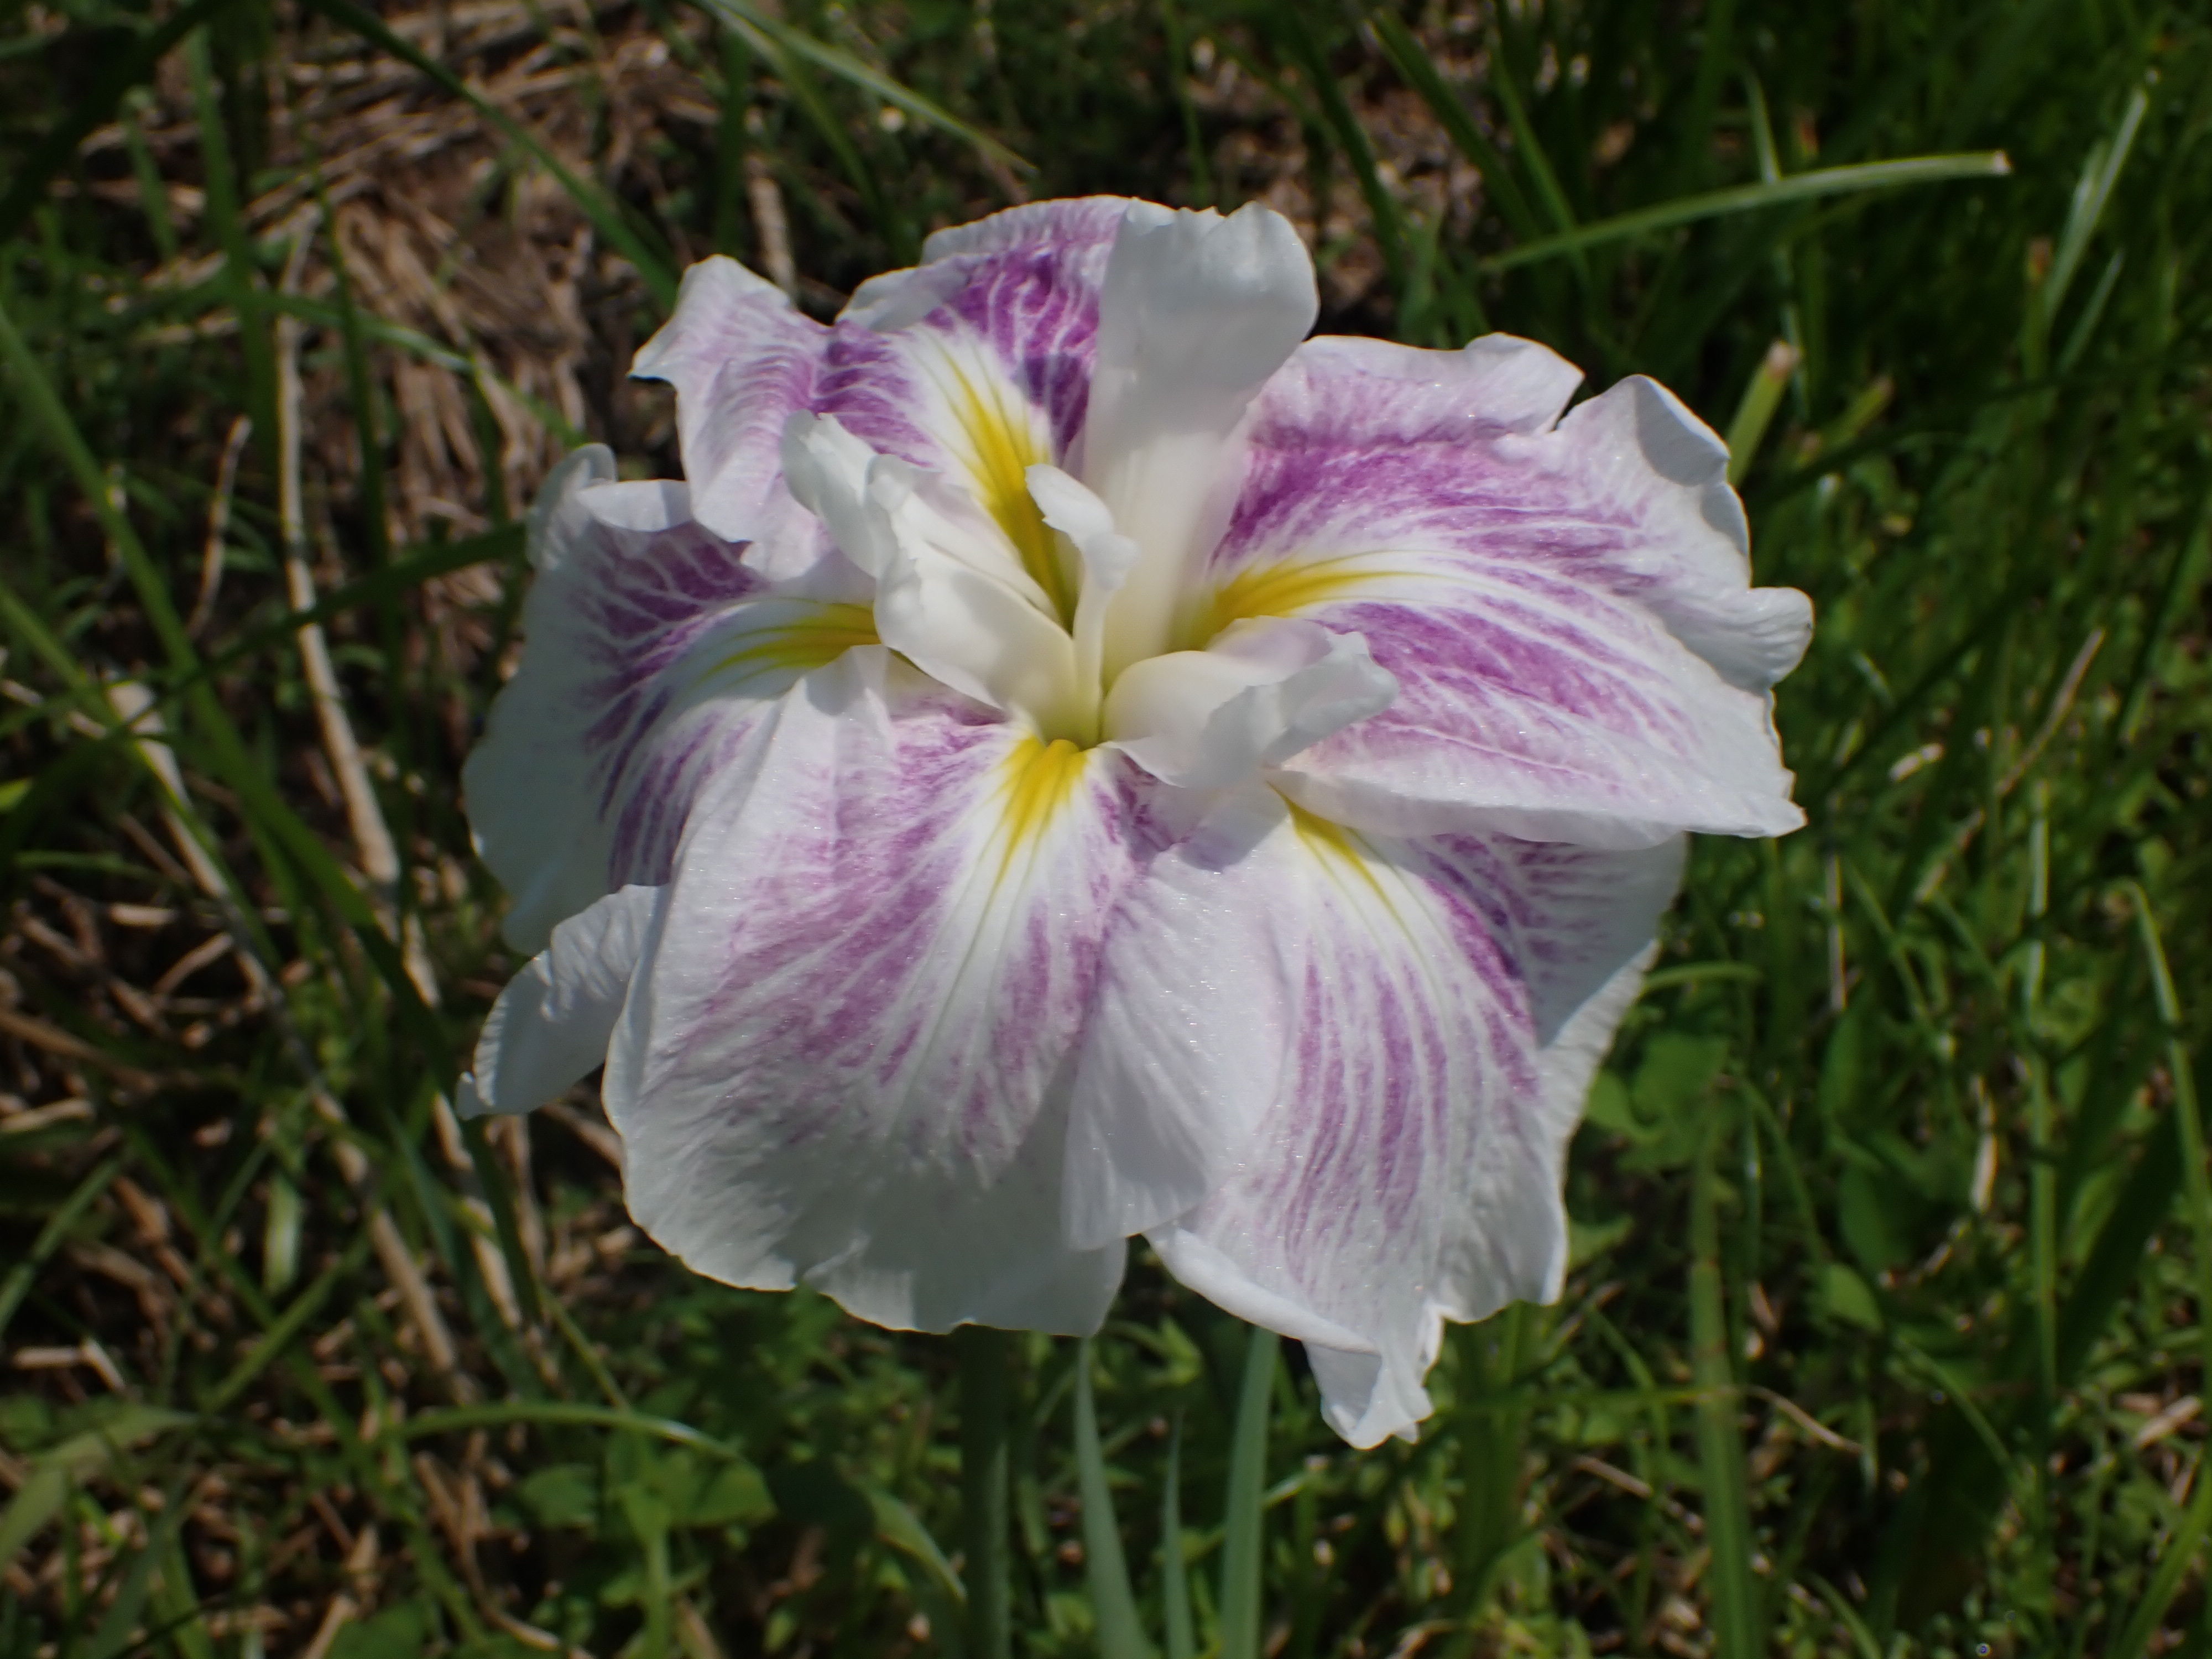 ハナショウブ | Iris ensata var. ensata